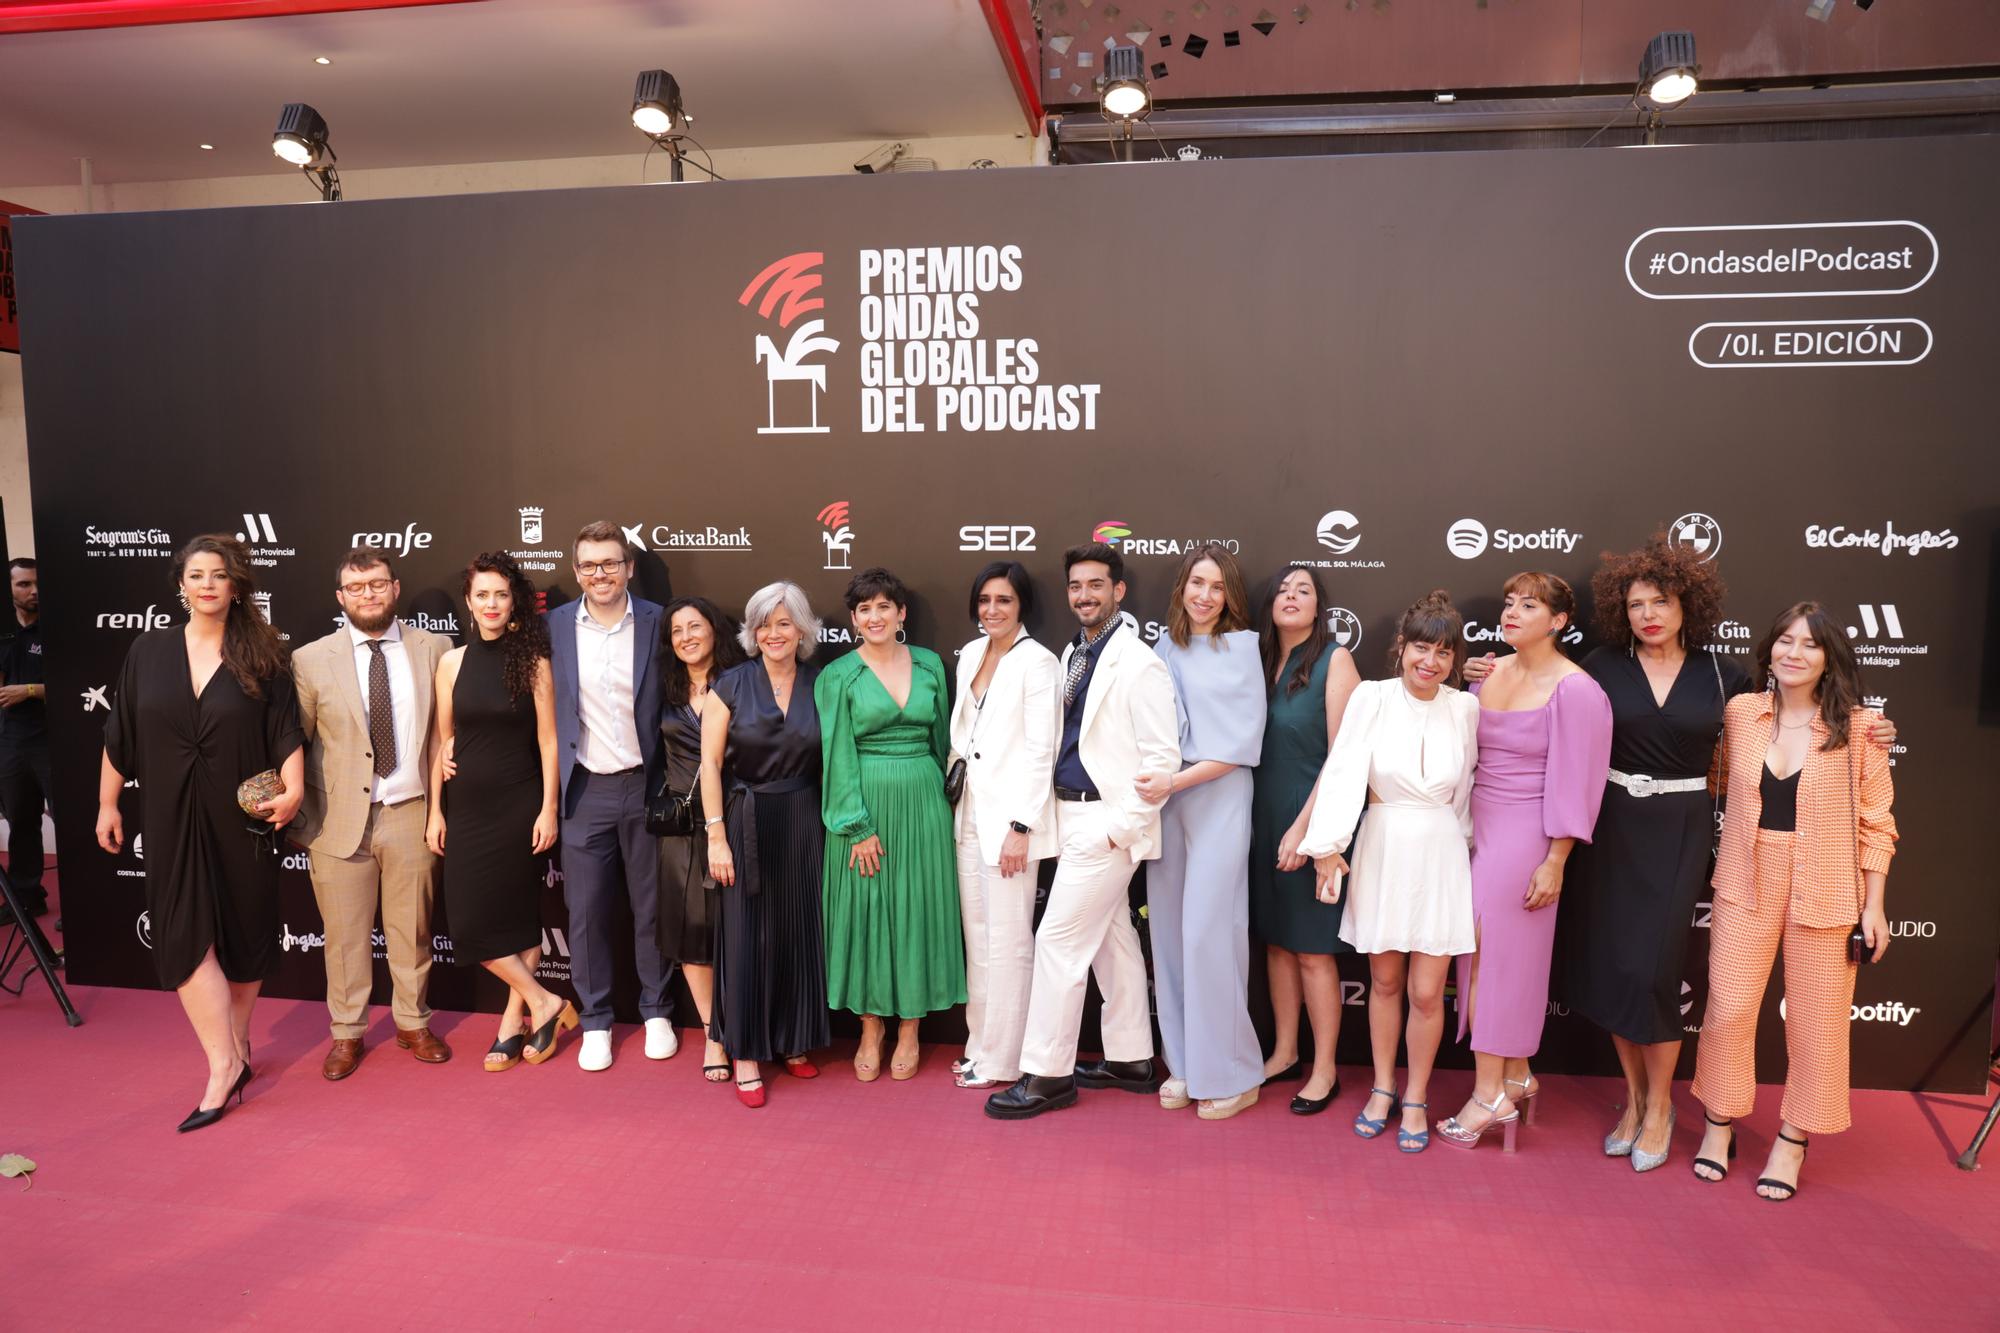 Málaga acoge la primera edición de los Premios Ondas Globales del Pósdcast